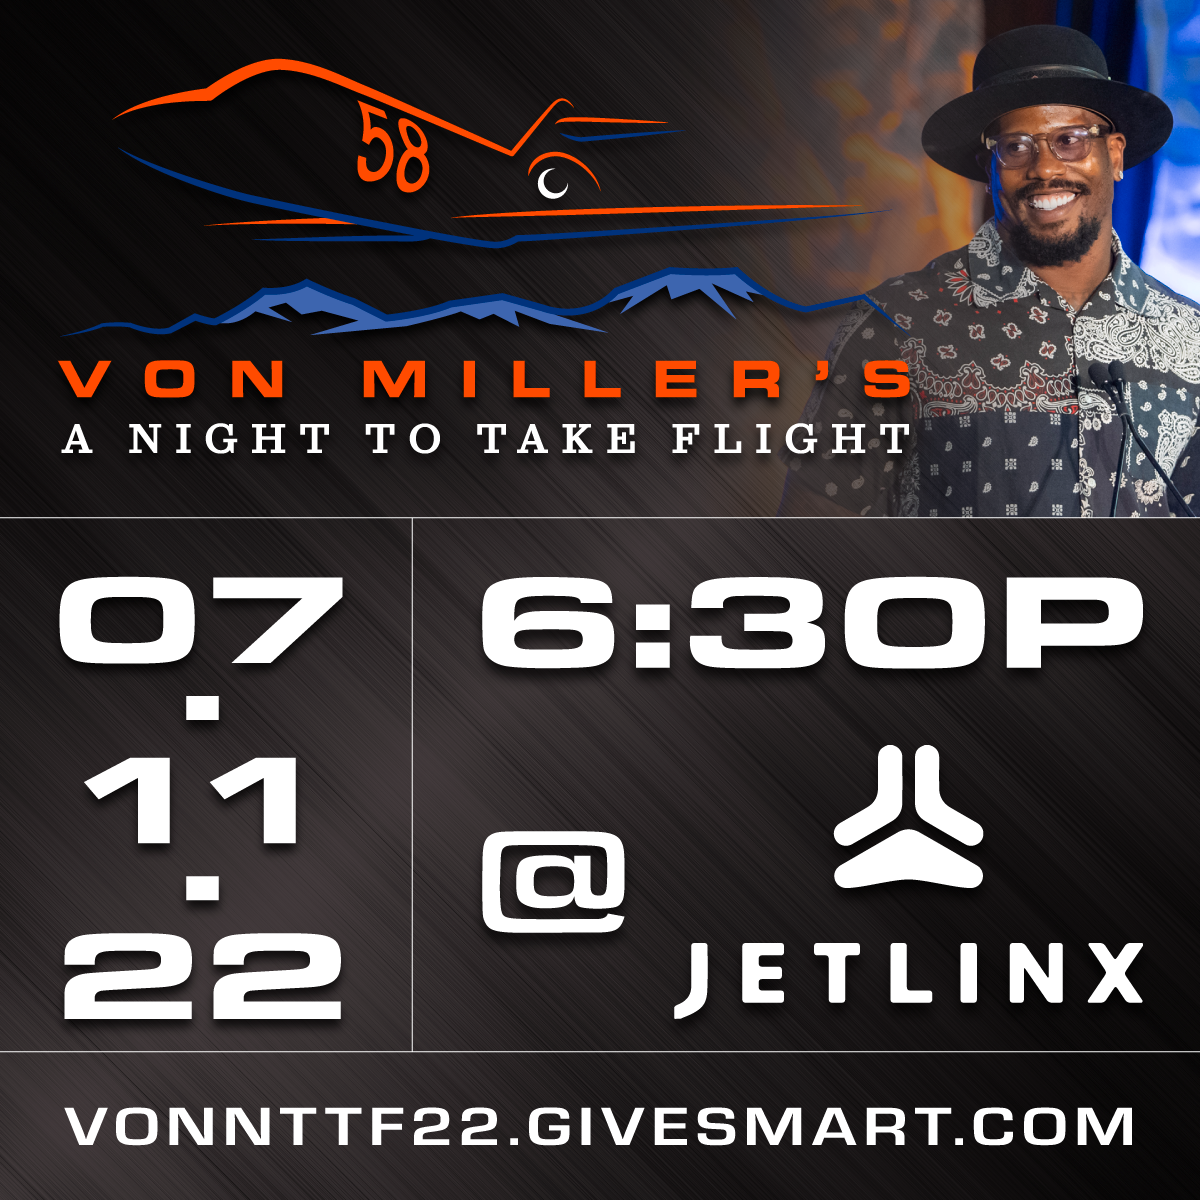 Von Miller's 3rd Annual Night to Take Flight Fundraiser